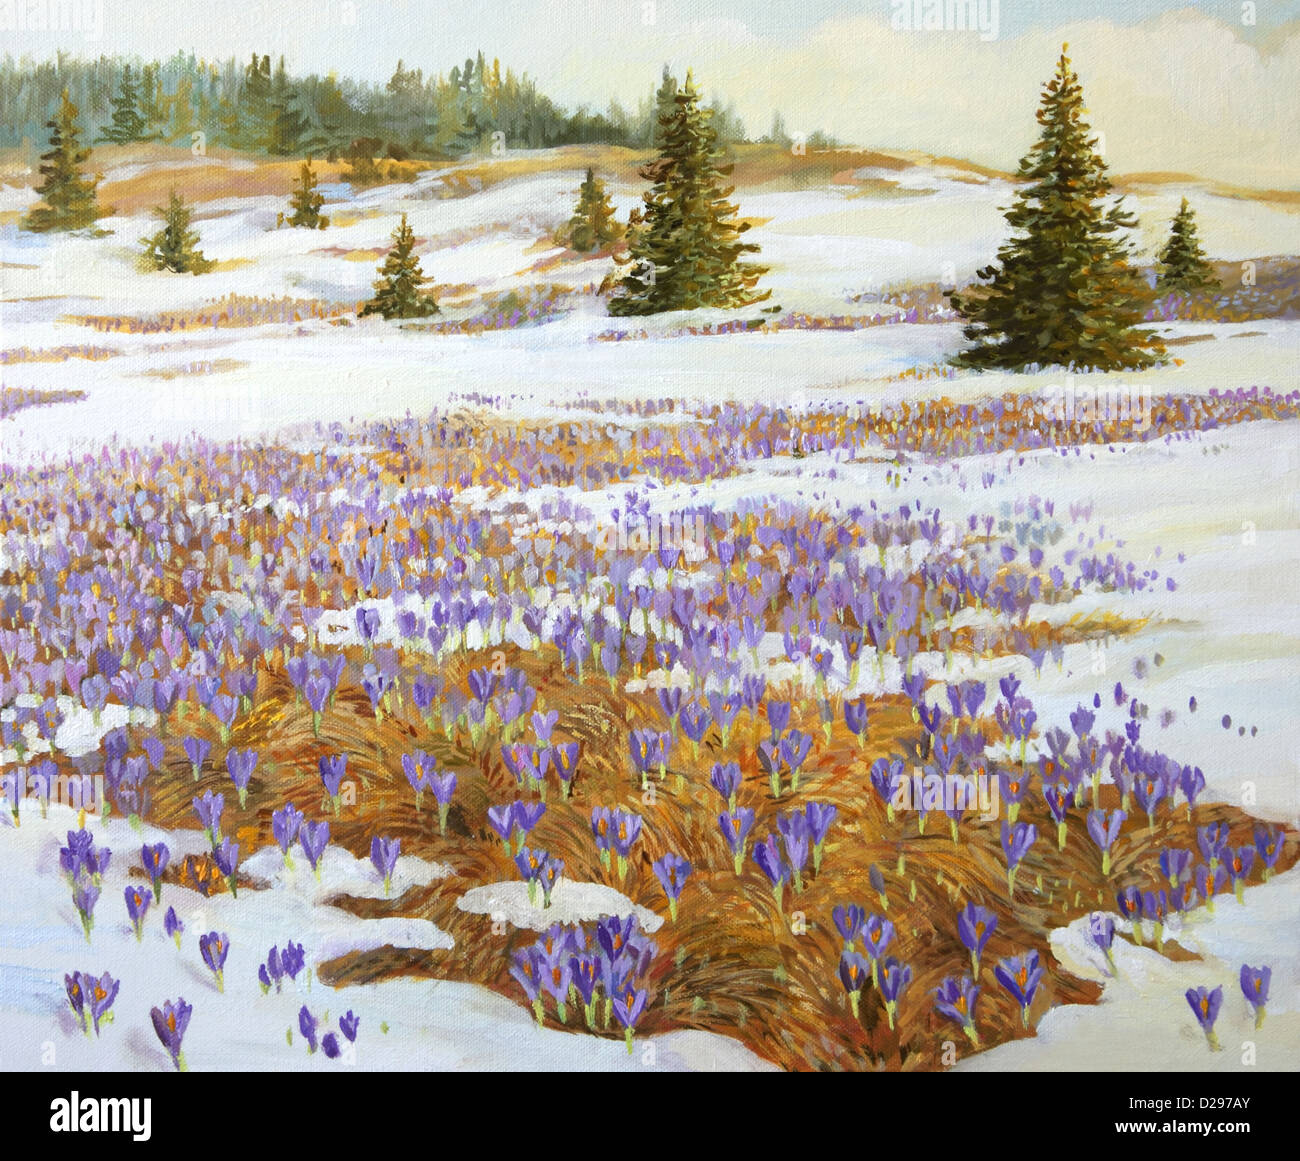 Un dipinto ad olio su tela di un prato con macchie di neve e la fioritura viola crocus fiori. Foto Stock